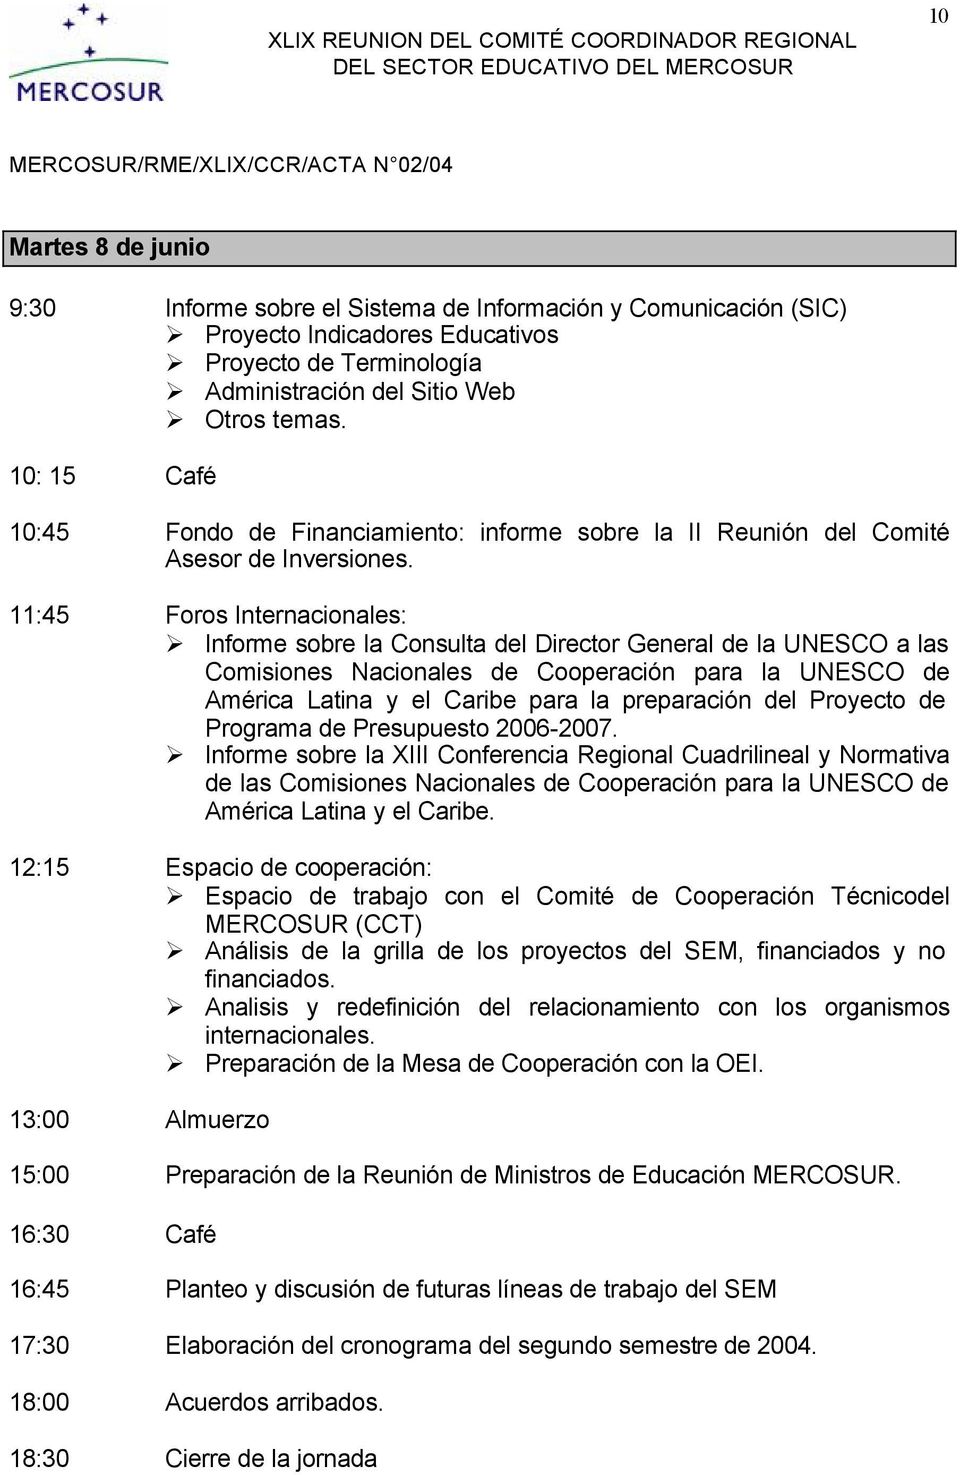 11:45 Foros Internacionales: Informe sobre la Consulta del Director General de la UNESCO a las Comisiones Nacionales de Cooperación para la UNESCO de América Latina y el Caribe para la preparación